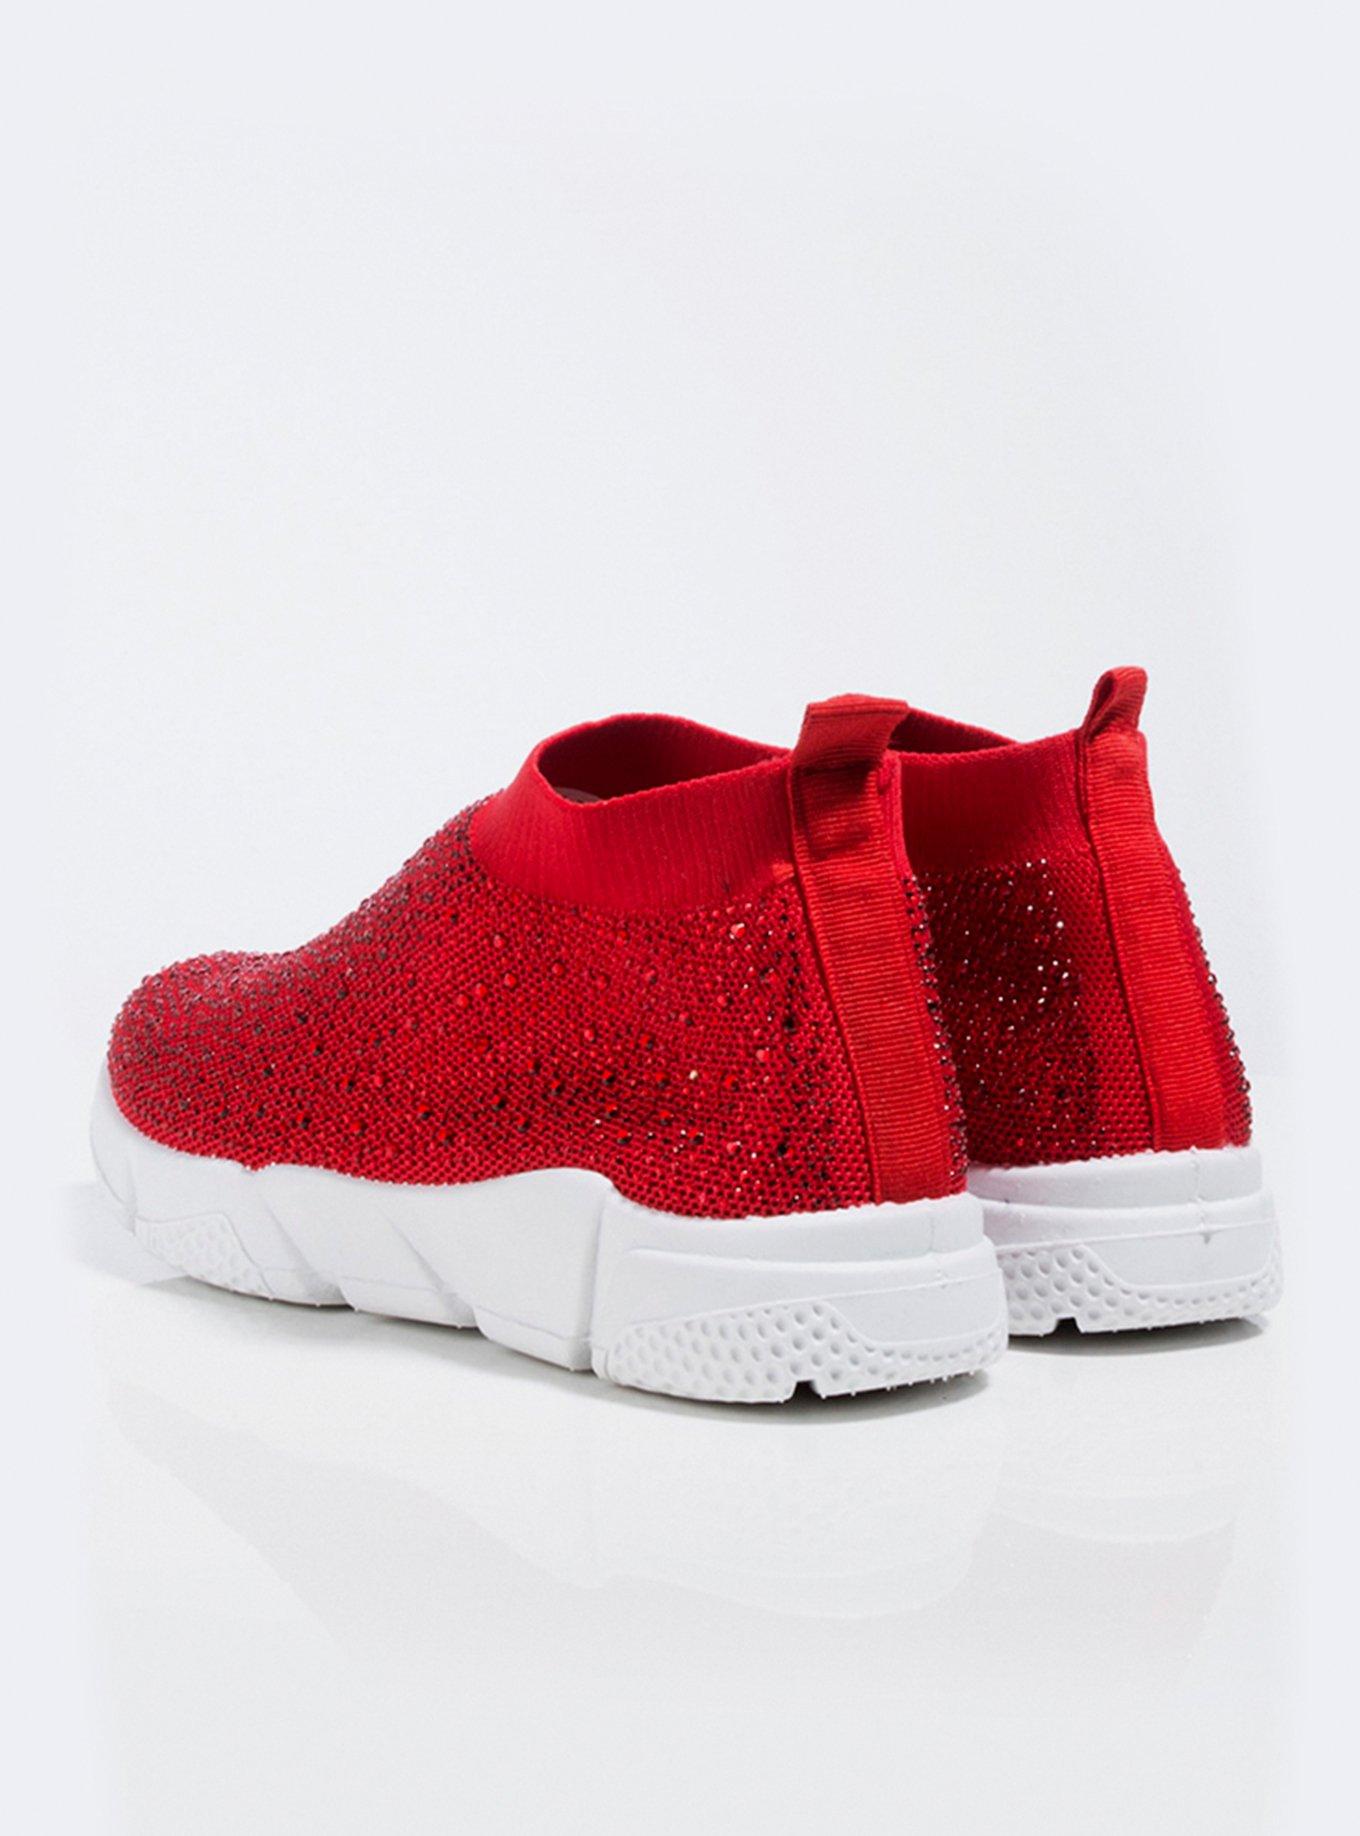 Azalea Wang Girl's Best Friend Diamond Sneaker Red, RED, alternate